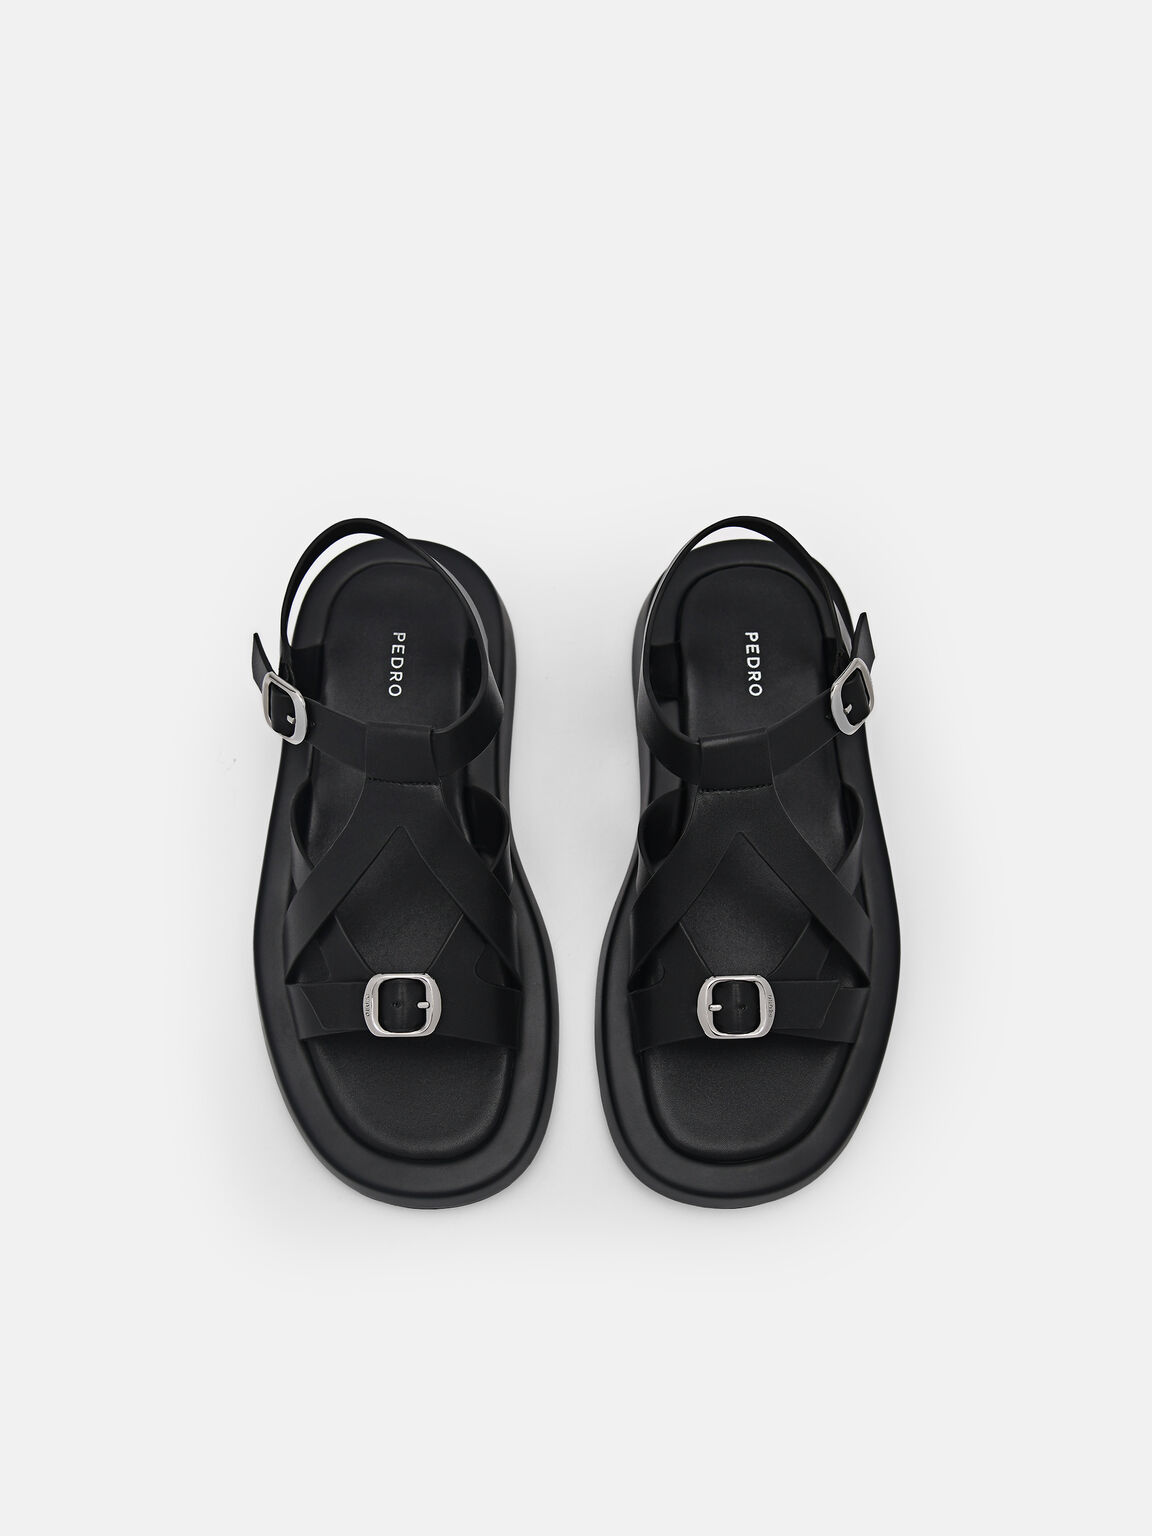 Eden Ankle Strap Sandals, Black